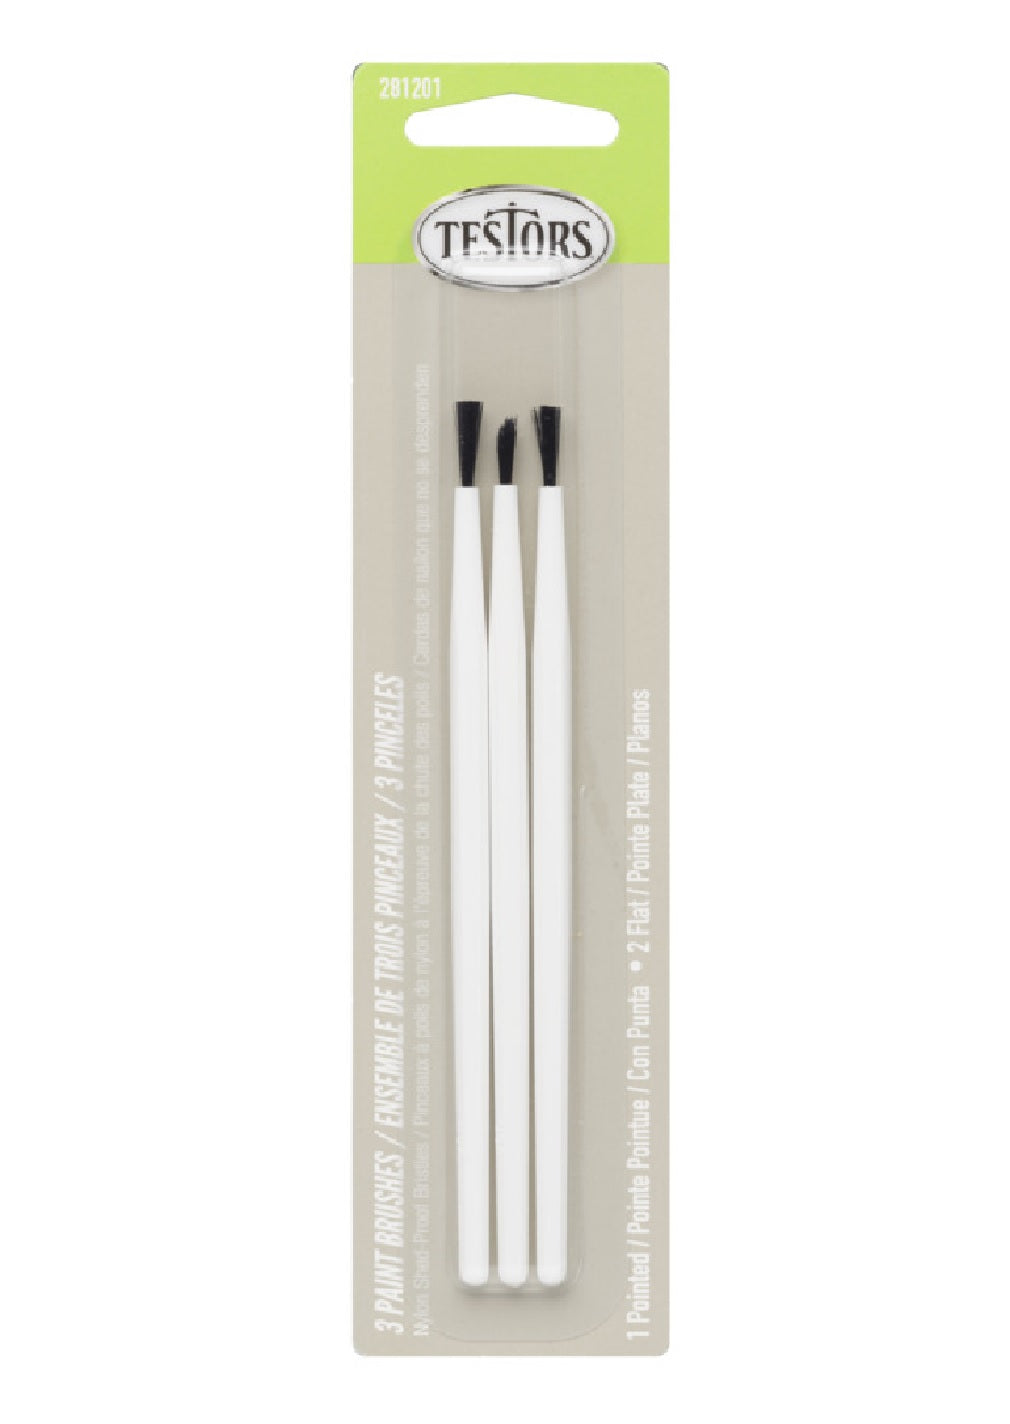 Testor 281201 Paint Brush Set